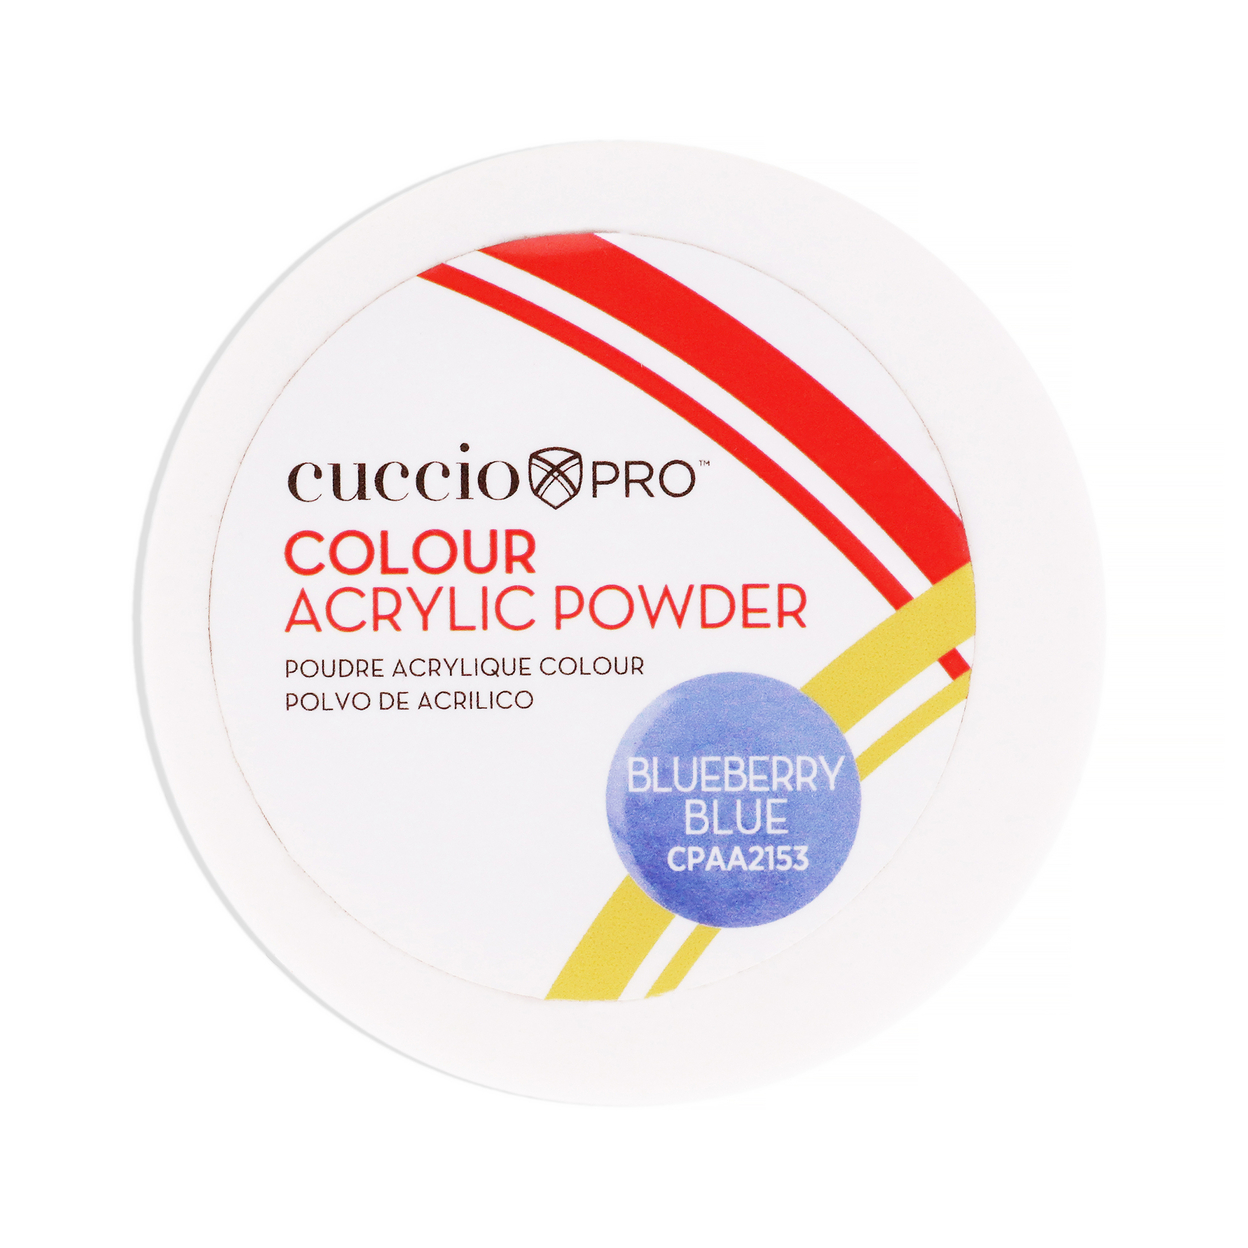 Cuccio PRO Colour Acrylic Powder - Blueberry Blue 1.6 Oz